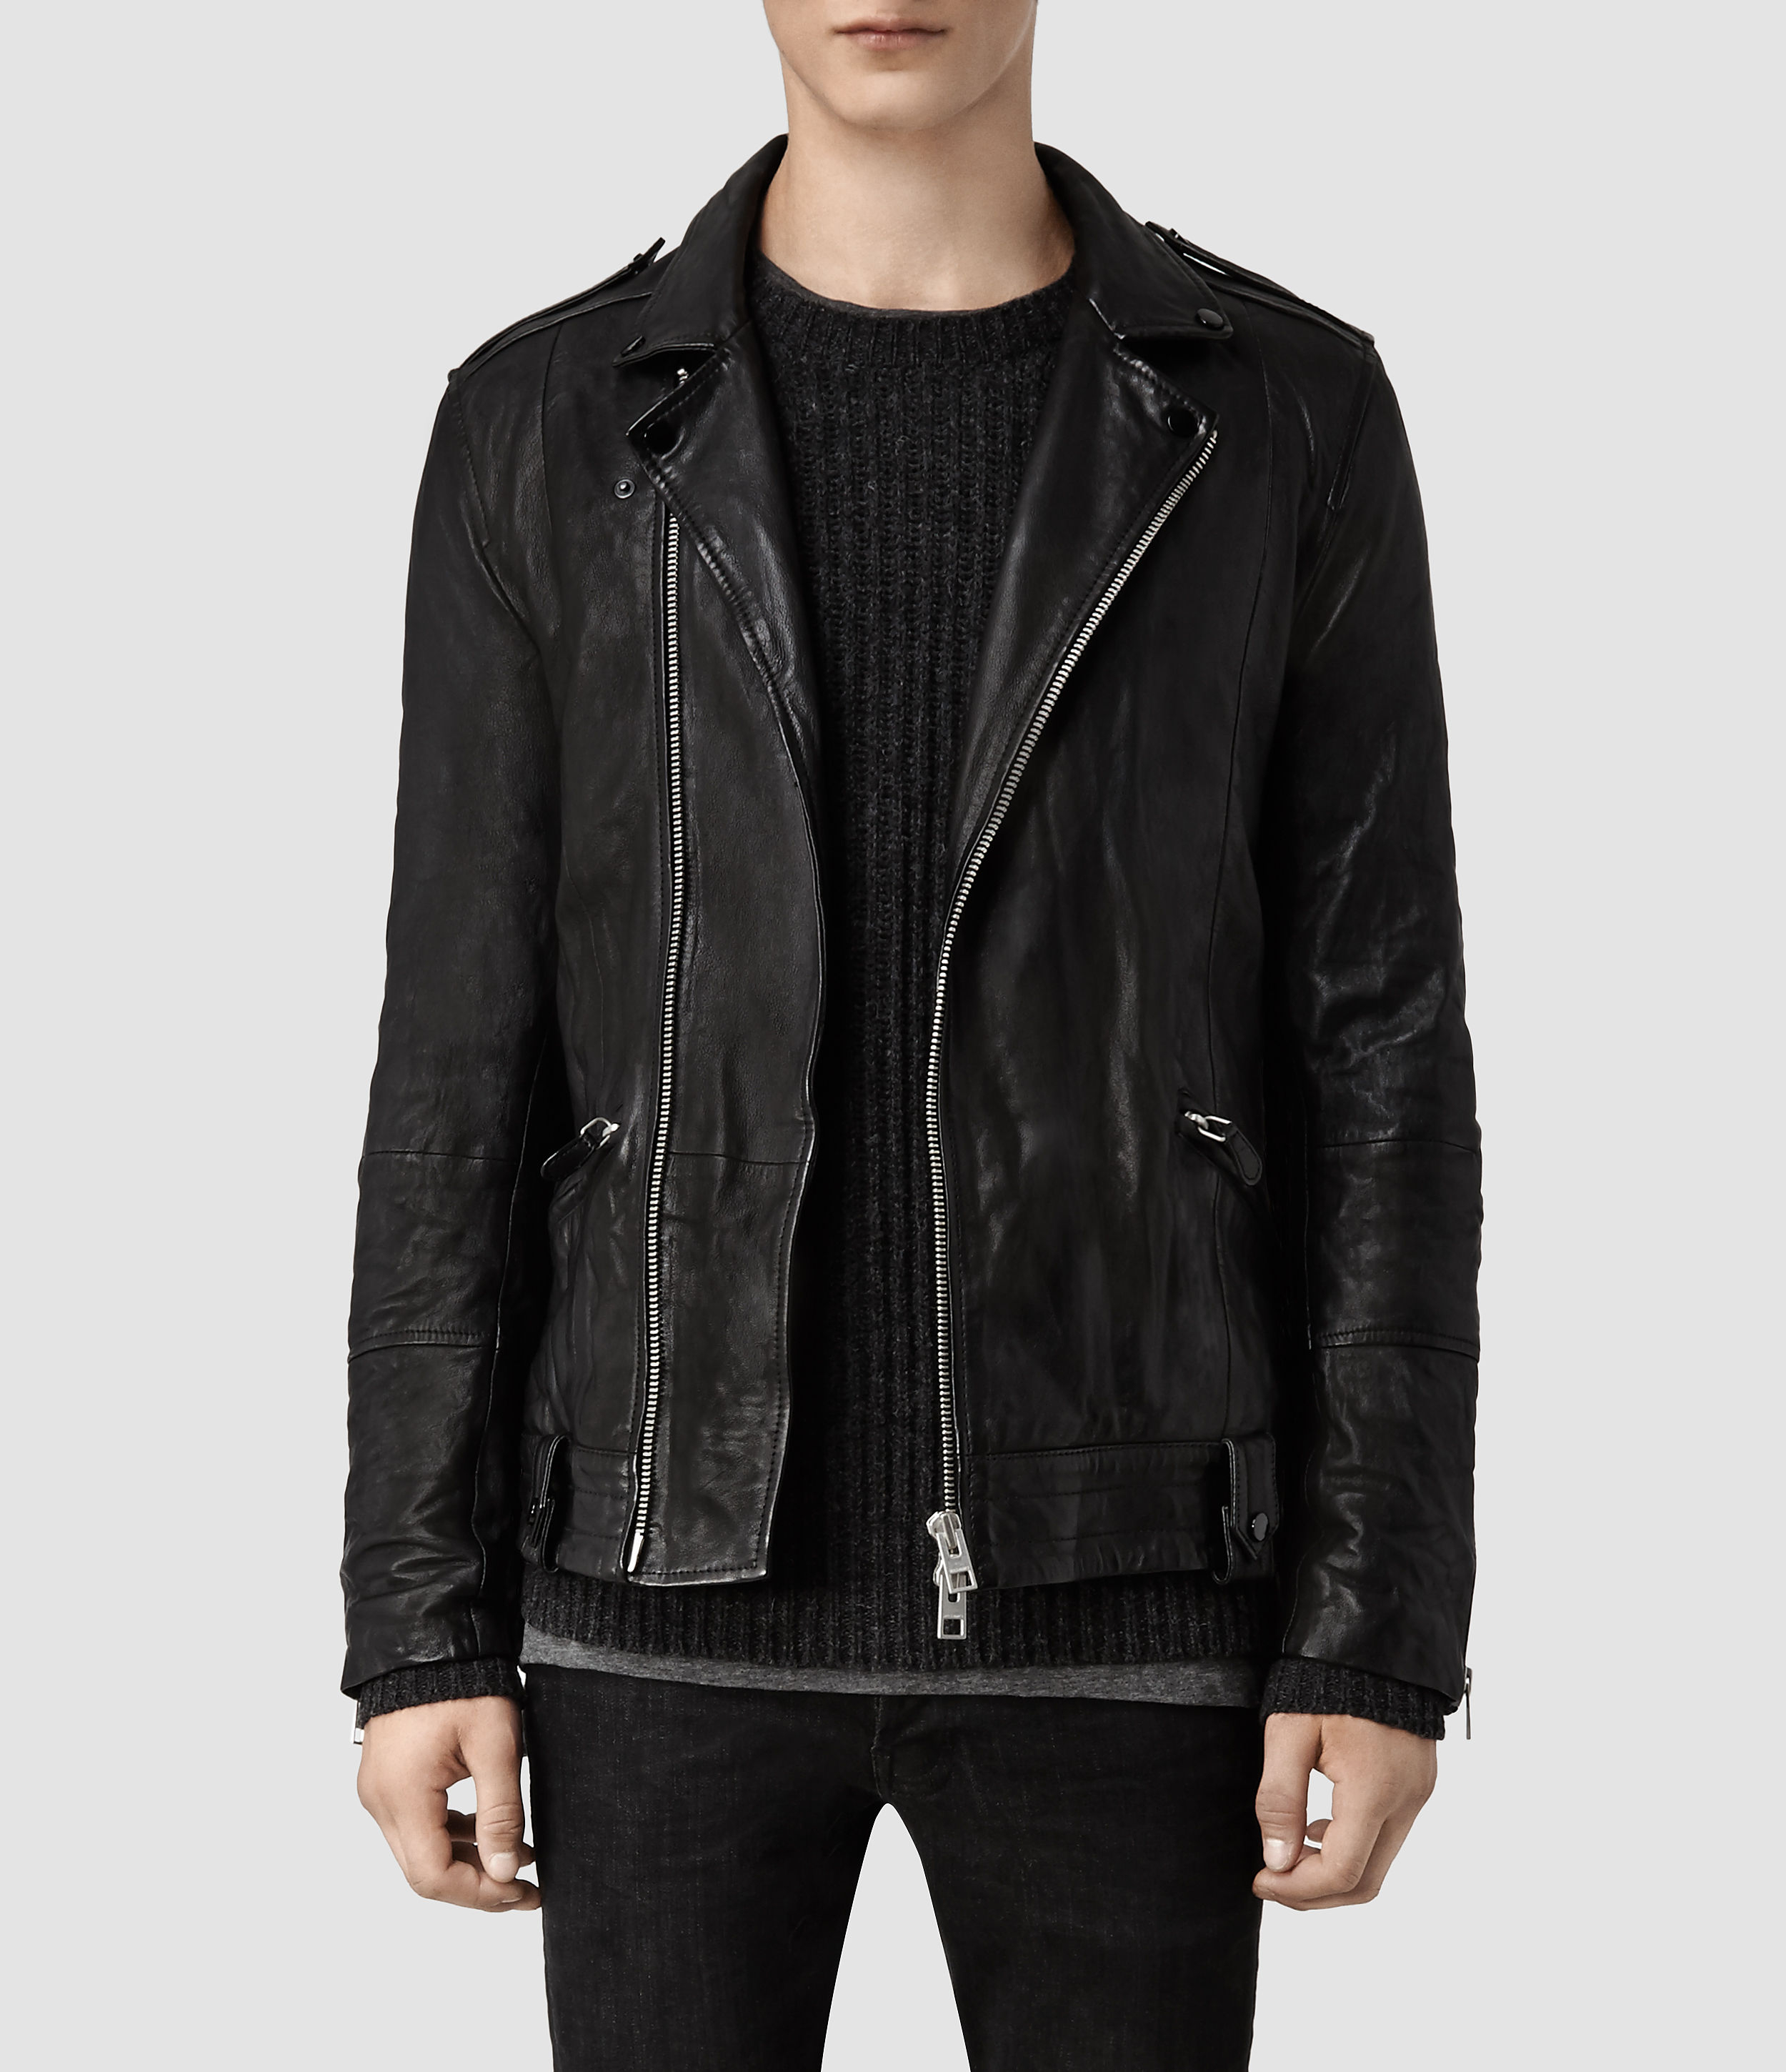 Lyst - Allsaints Griffin Leather Biker Jacket in Black for Men